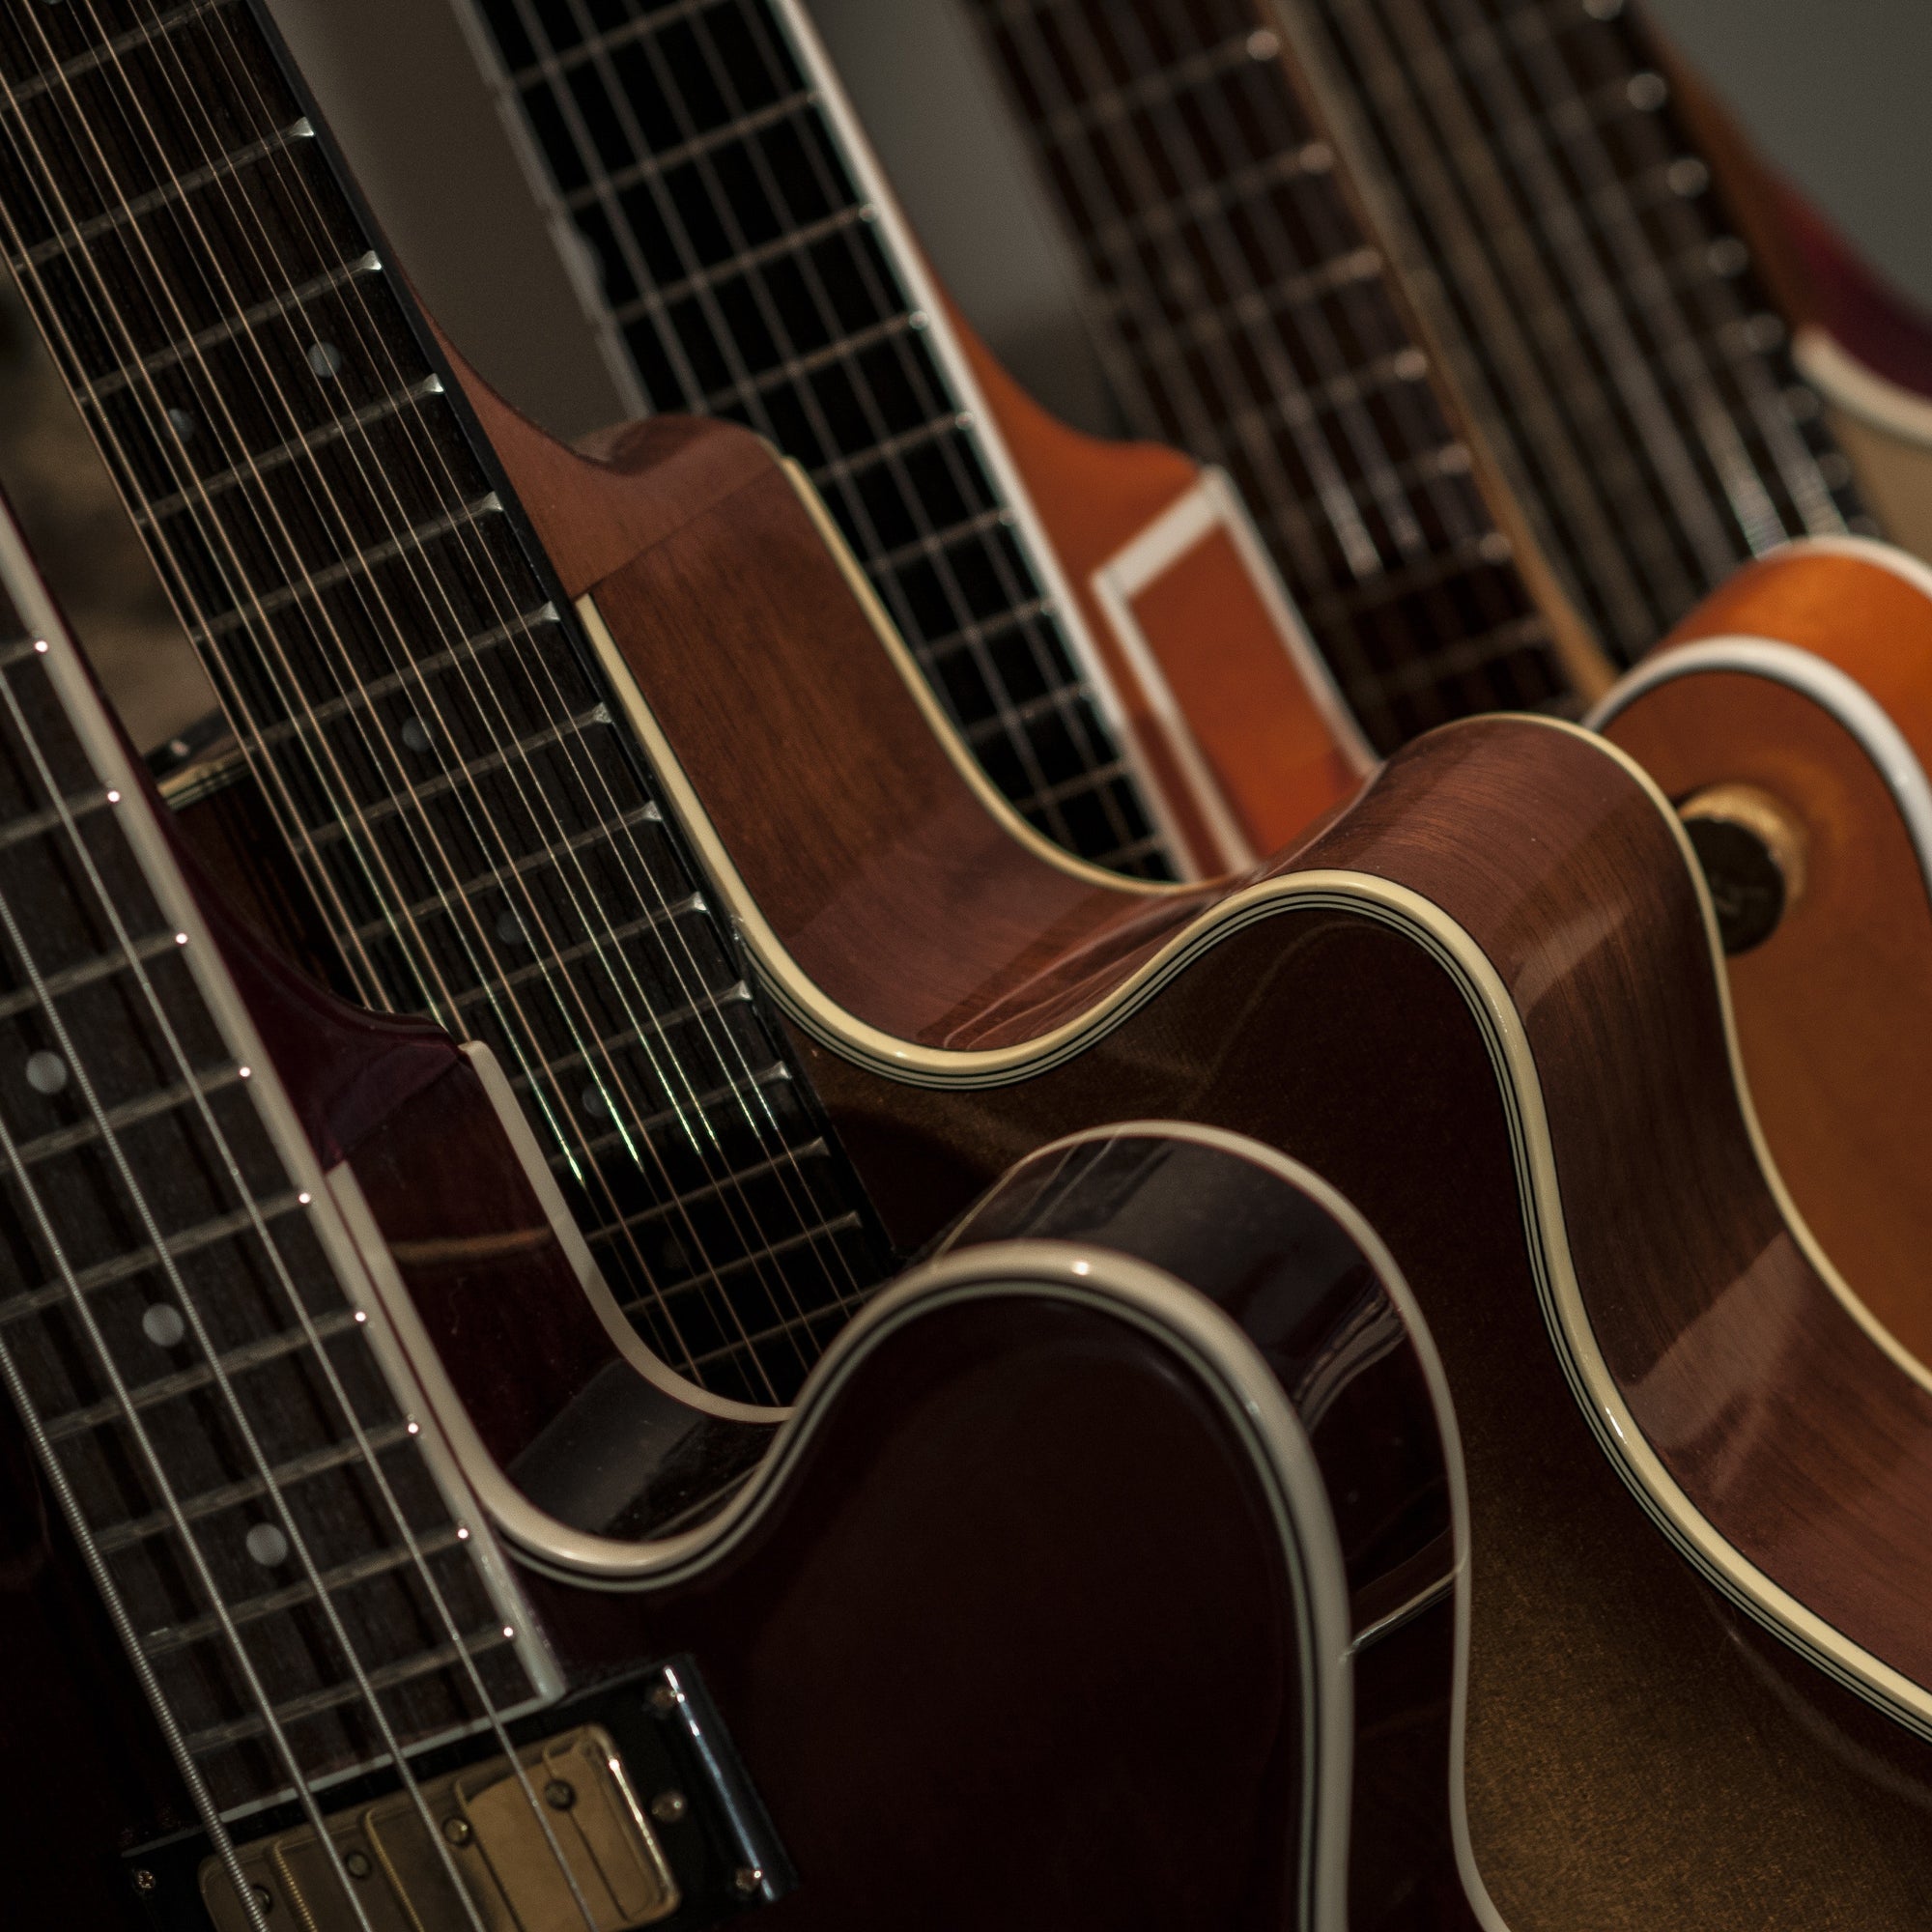 Guitars close up